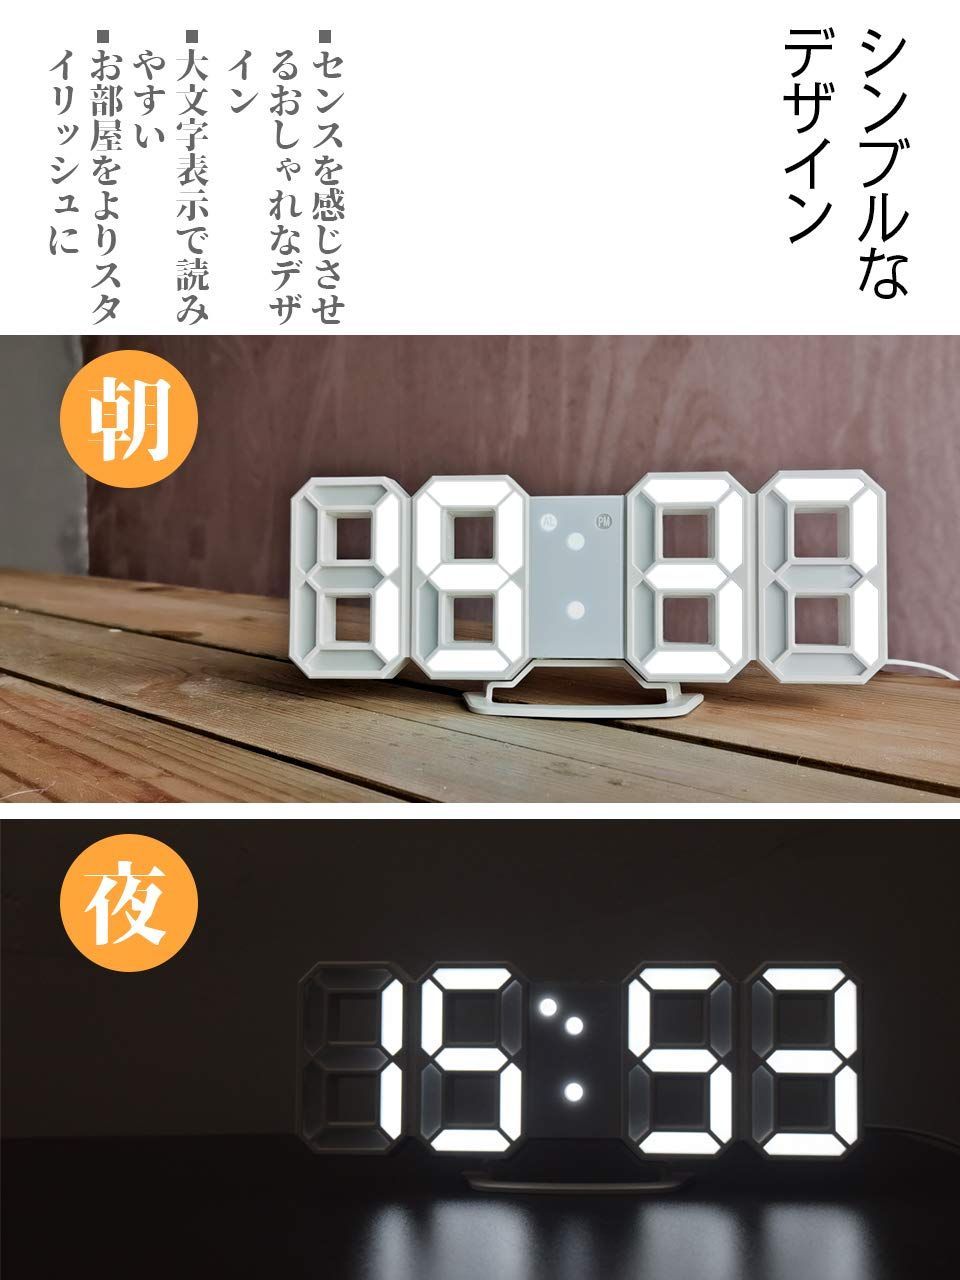 置き時計 デジタル時計 LED 置時計 掛け時計 壁掛け時計 夜も見える おしゃれ 【59%OFF!】